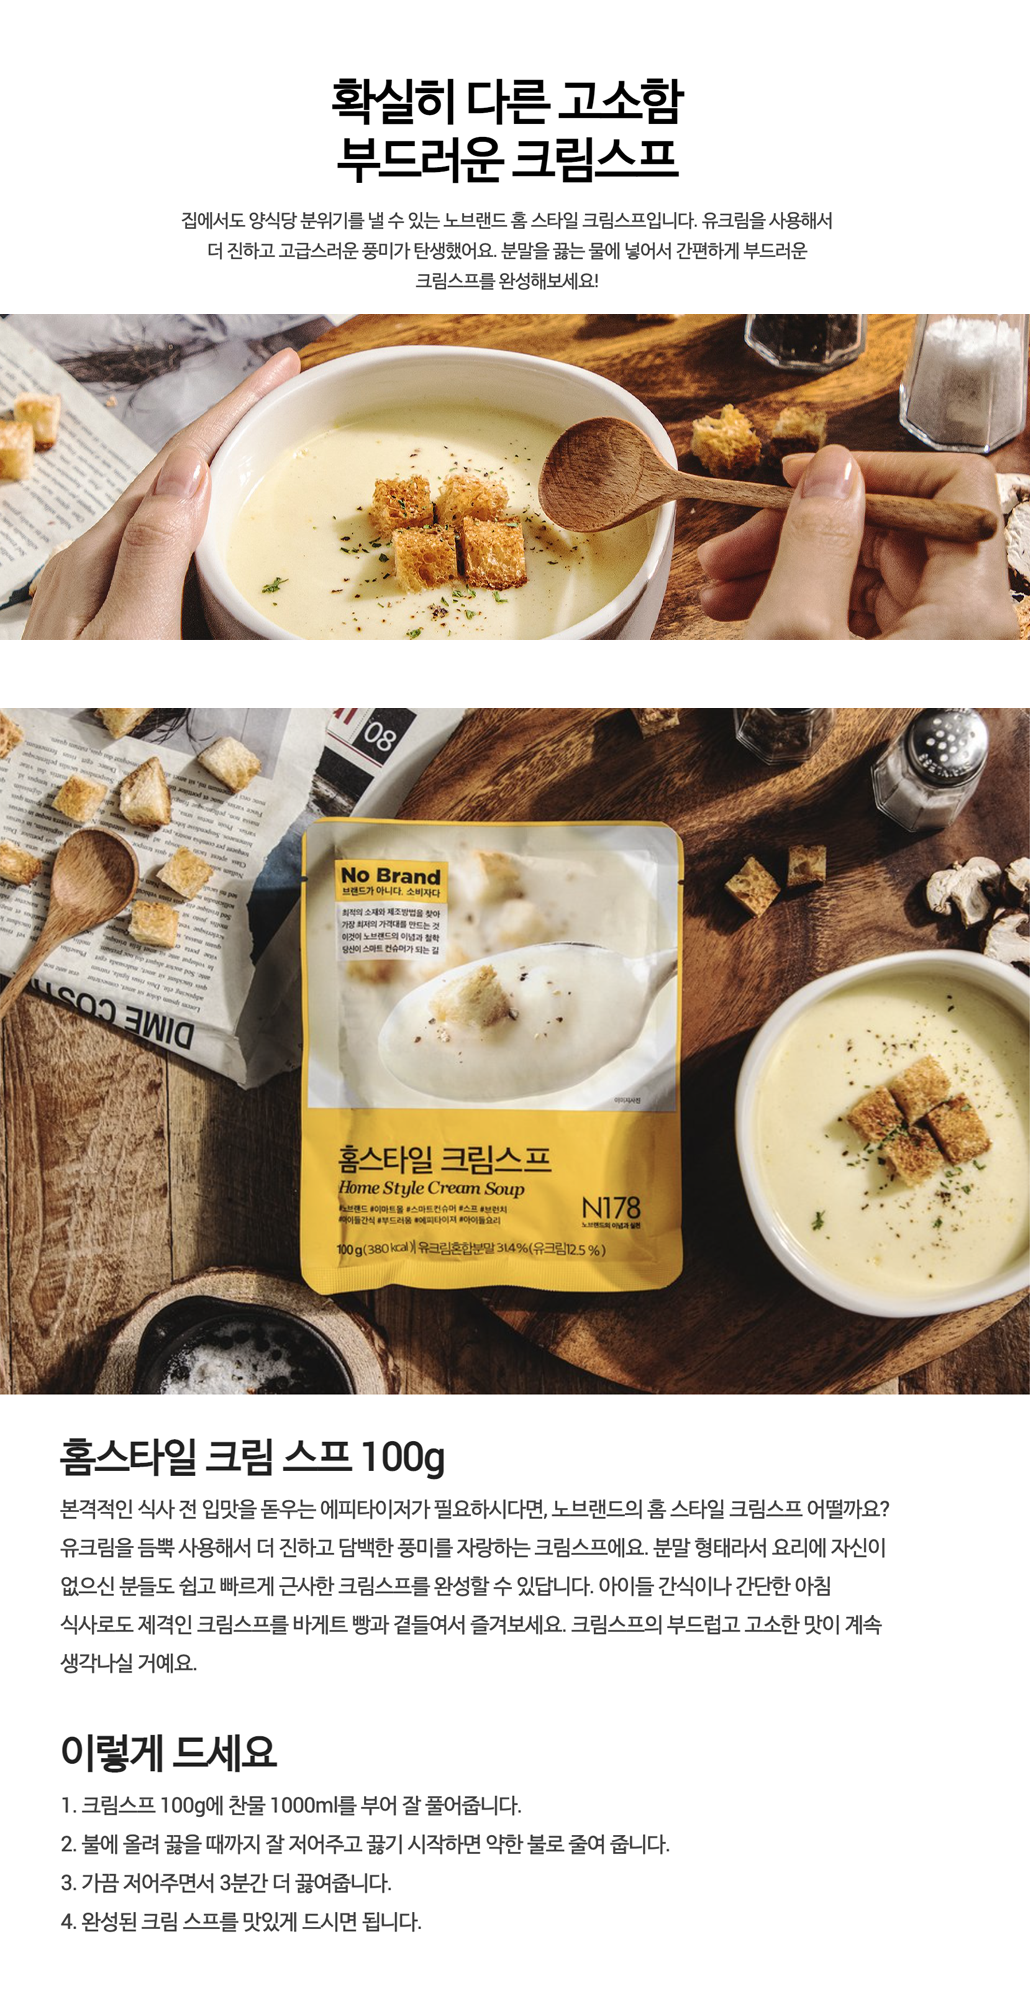 韓國食品-[노브랜드 No Brand] 홈스타일 크림스프 (가루형) 100g